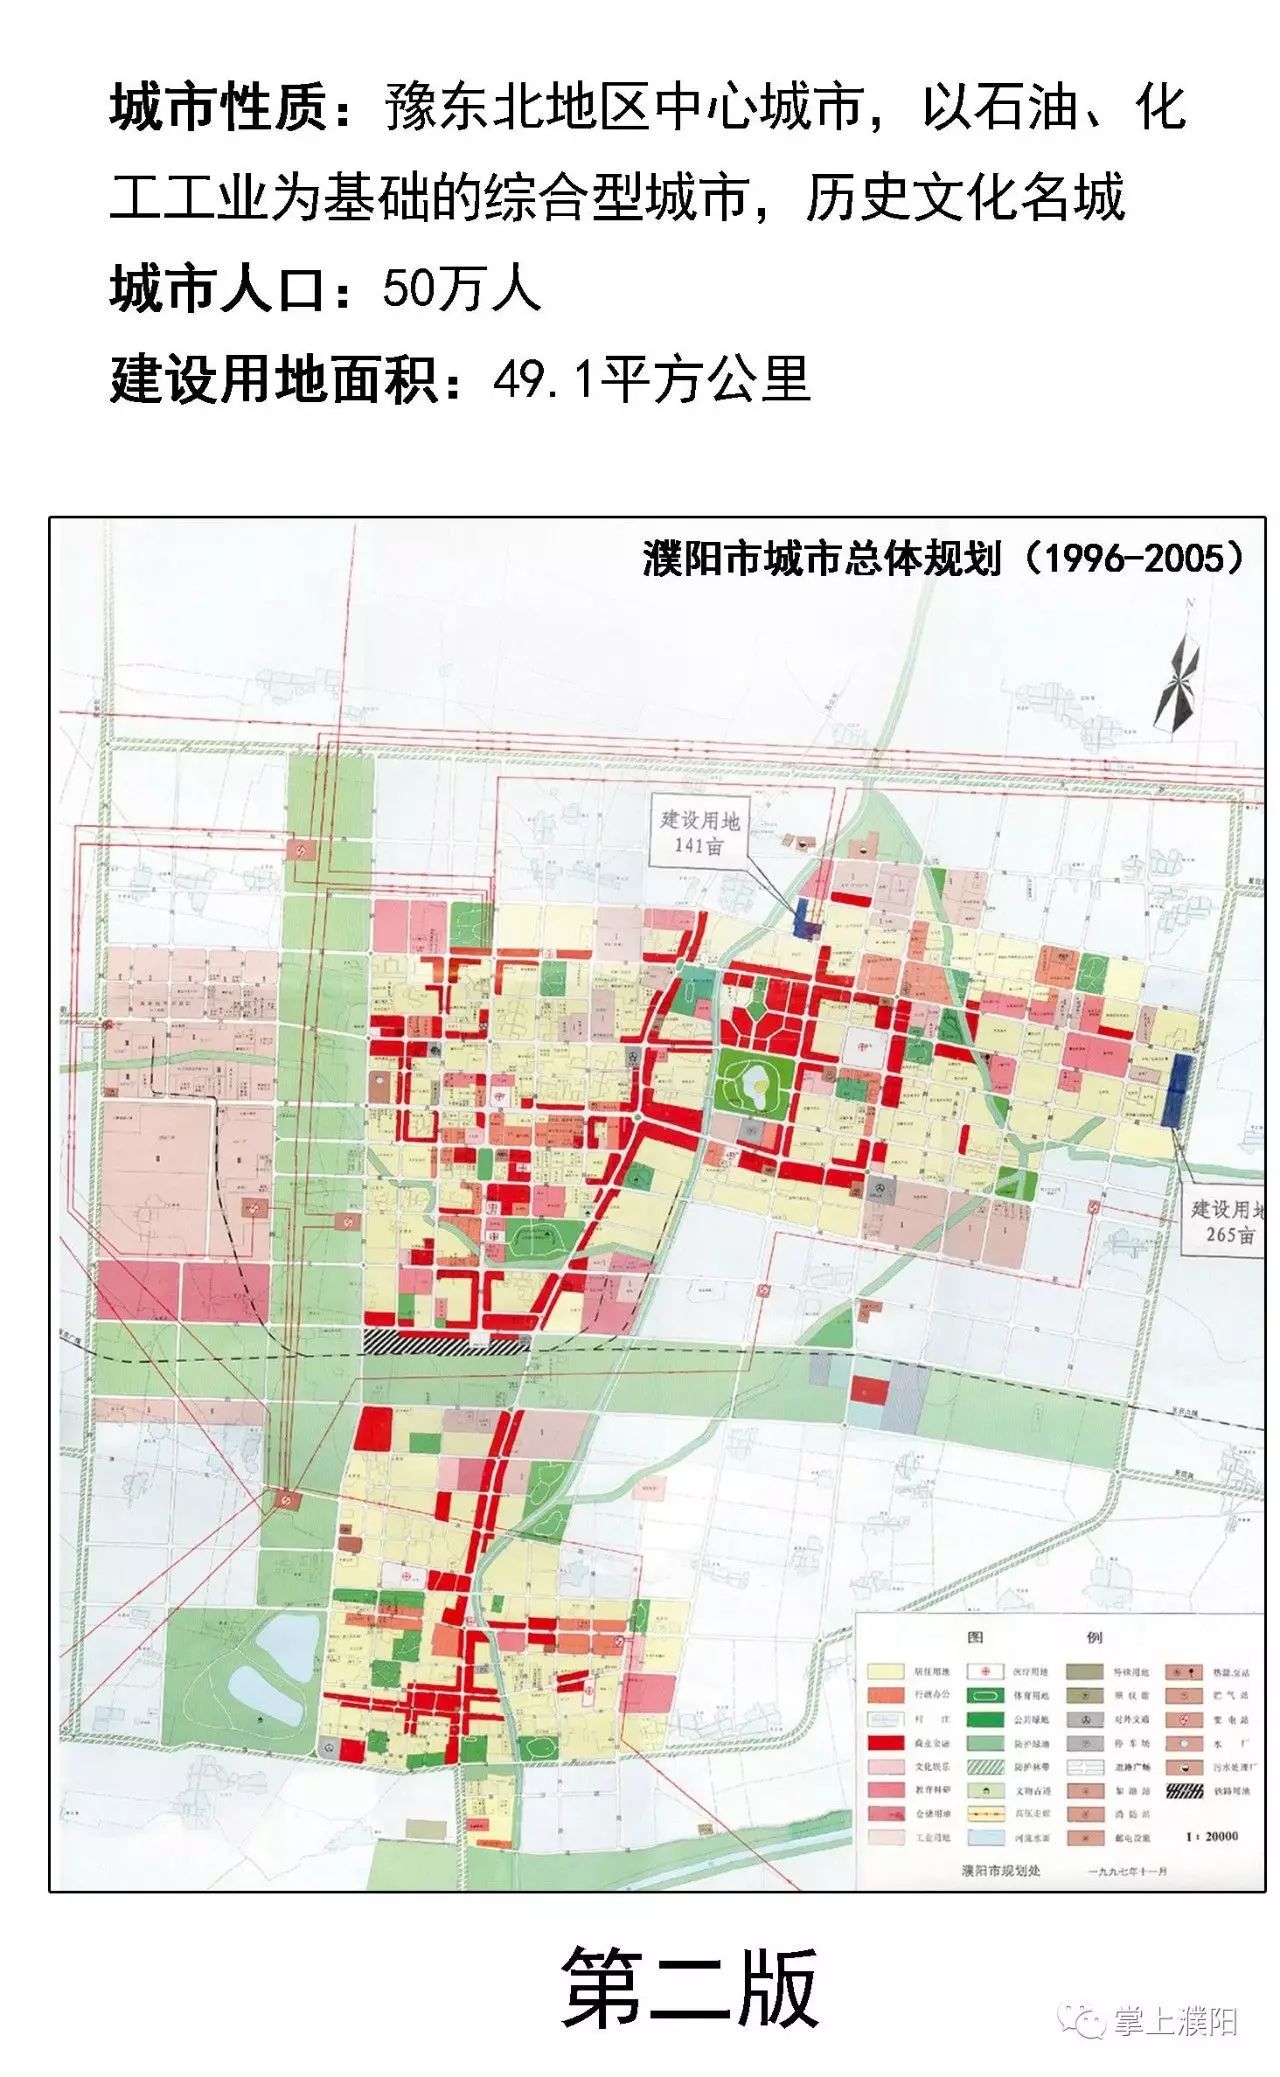 特大喜讯:濮阳县即将纳入市中心城区规划!